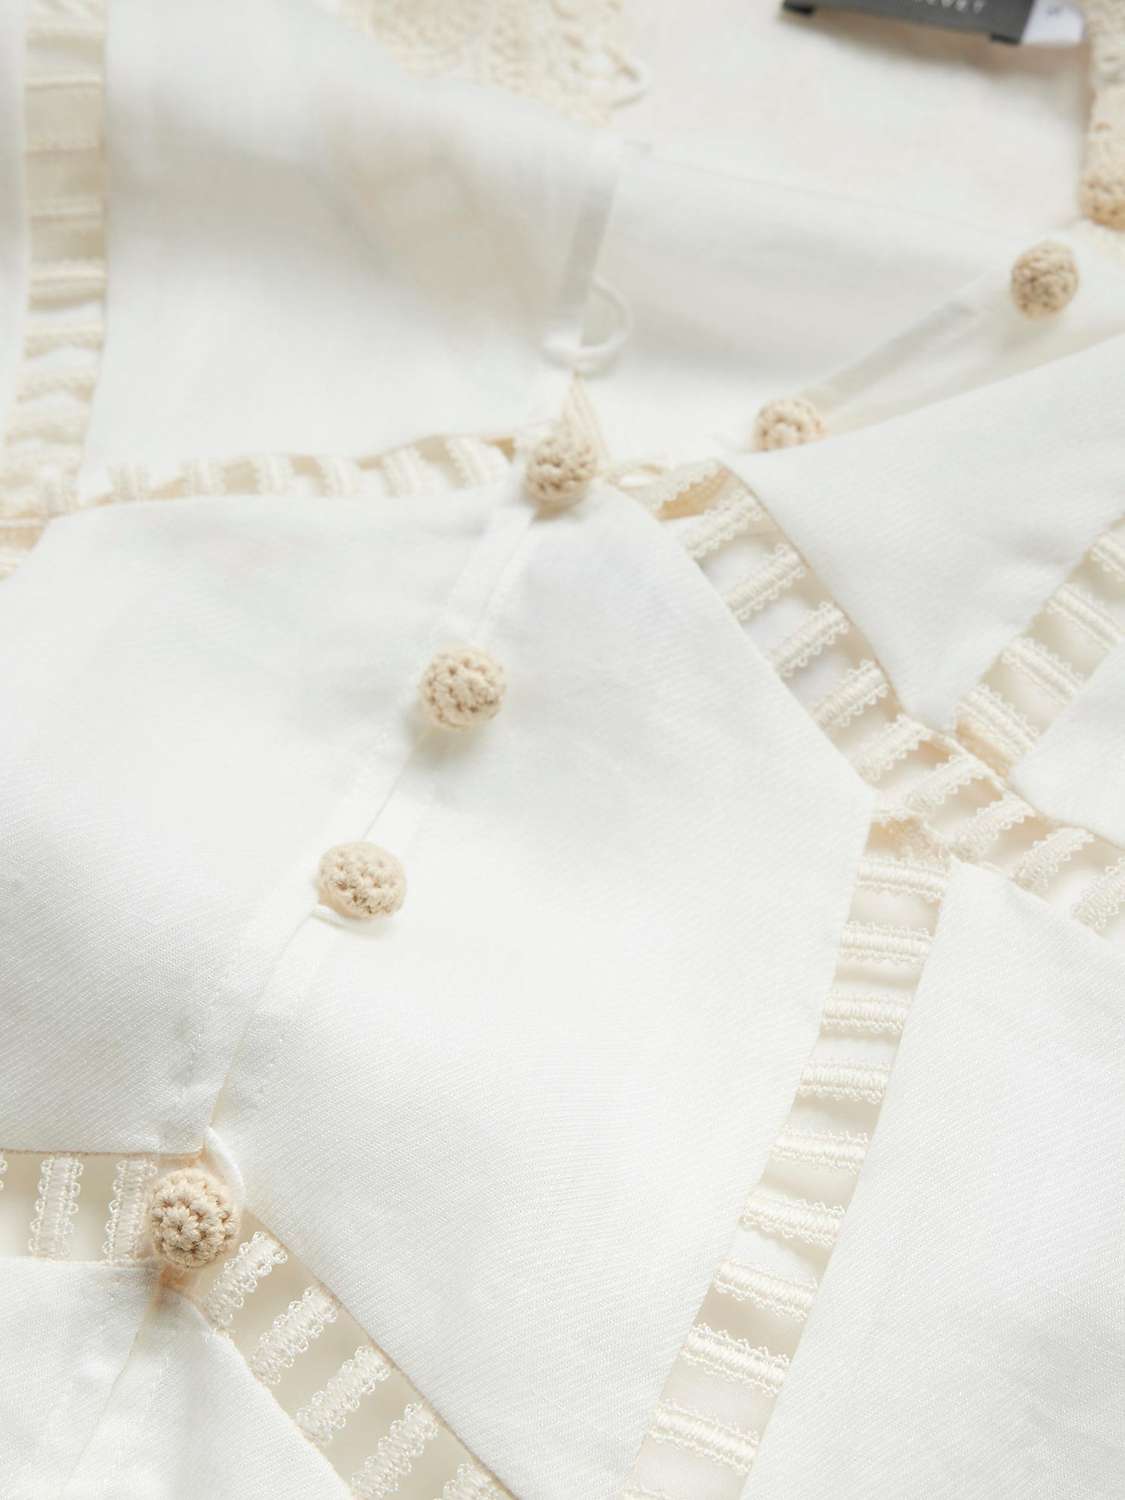 Buy Mint Velvet Embroidered Mini Dress, White Ivory Online at johnlewis.com